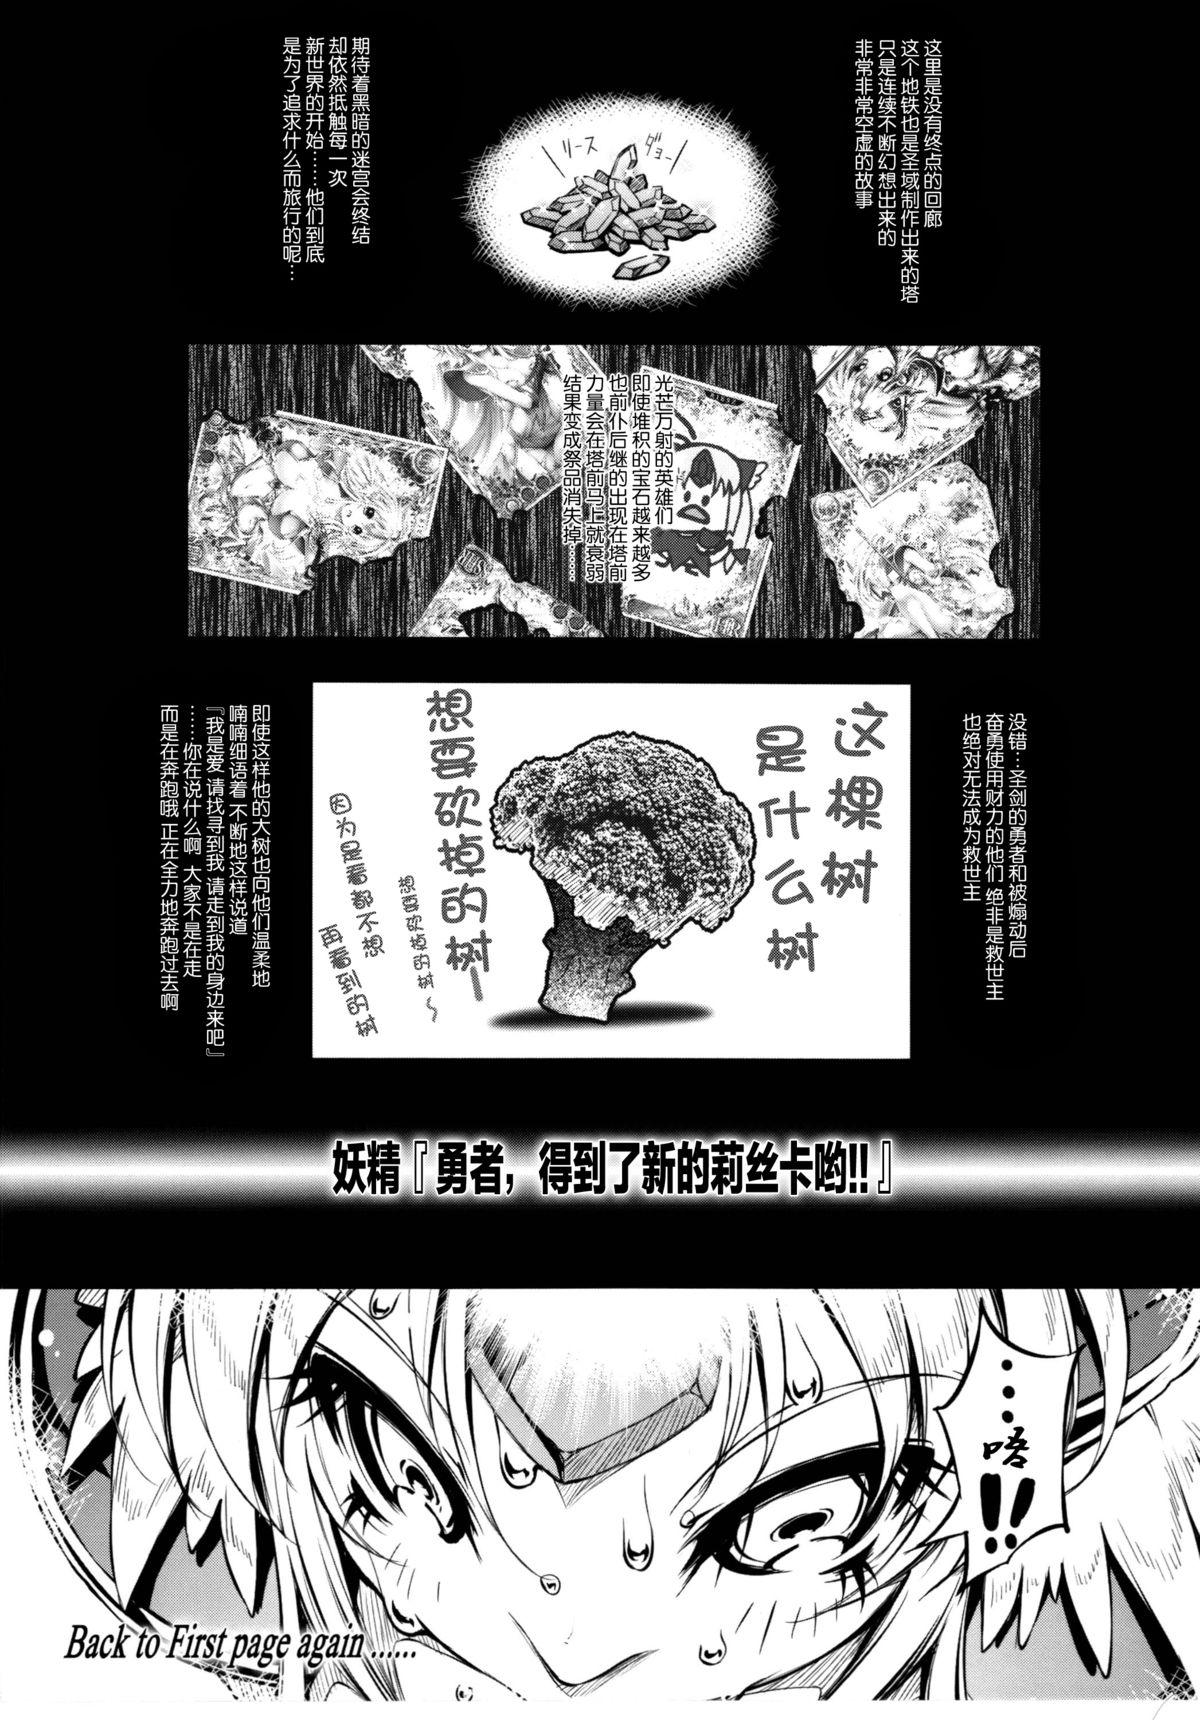 Blowjob Contest Minasan COM ni Juuman-nin no User ga Imasu. - Seiken densetsu 3 Perfect Body - Page 12